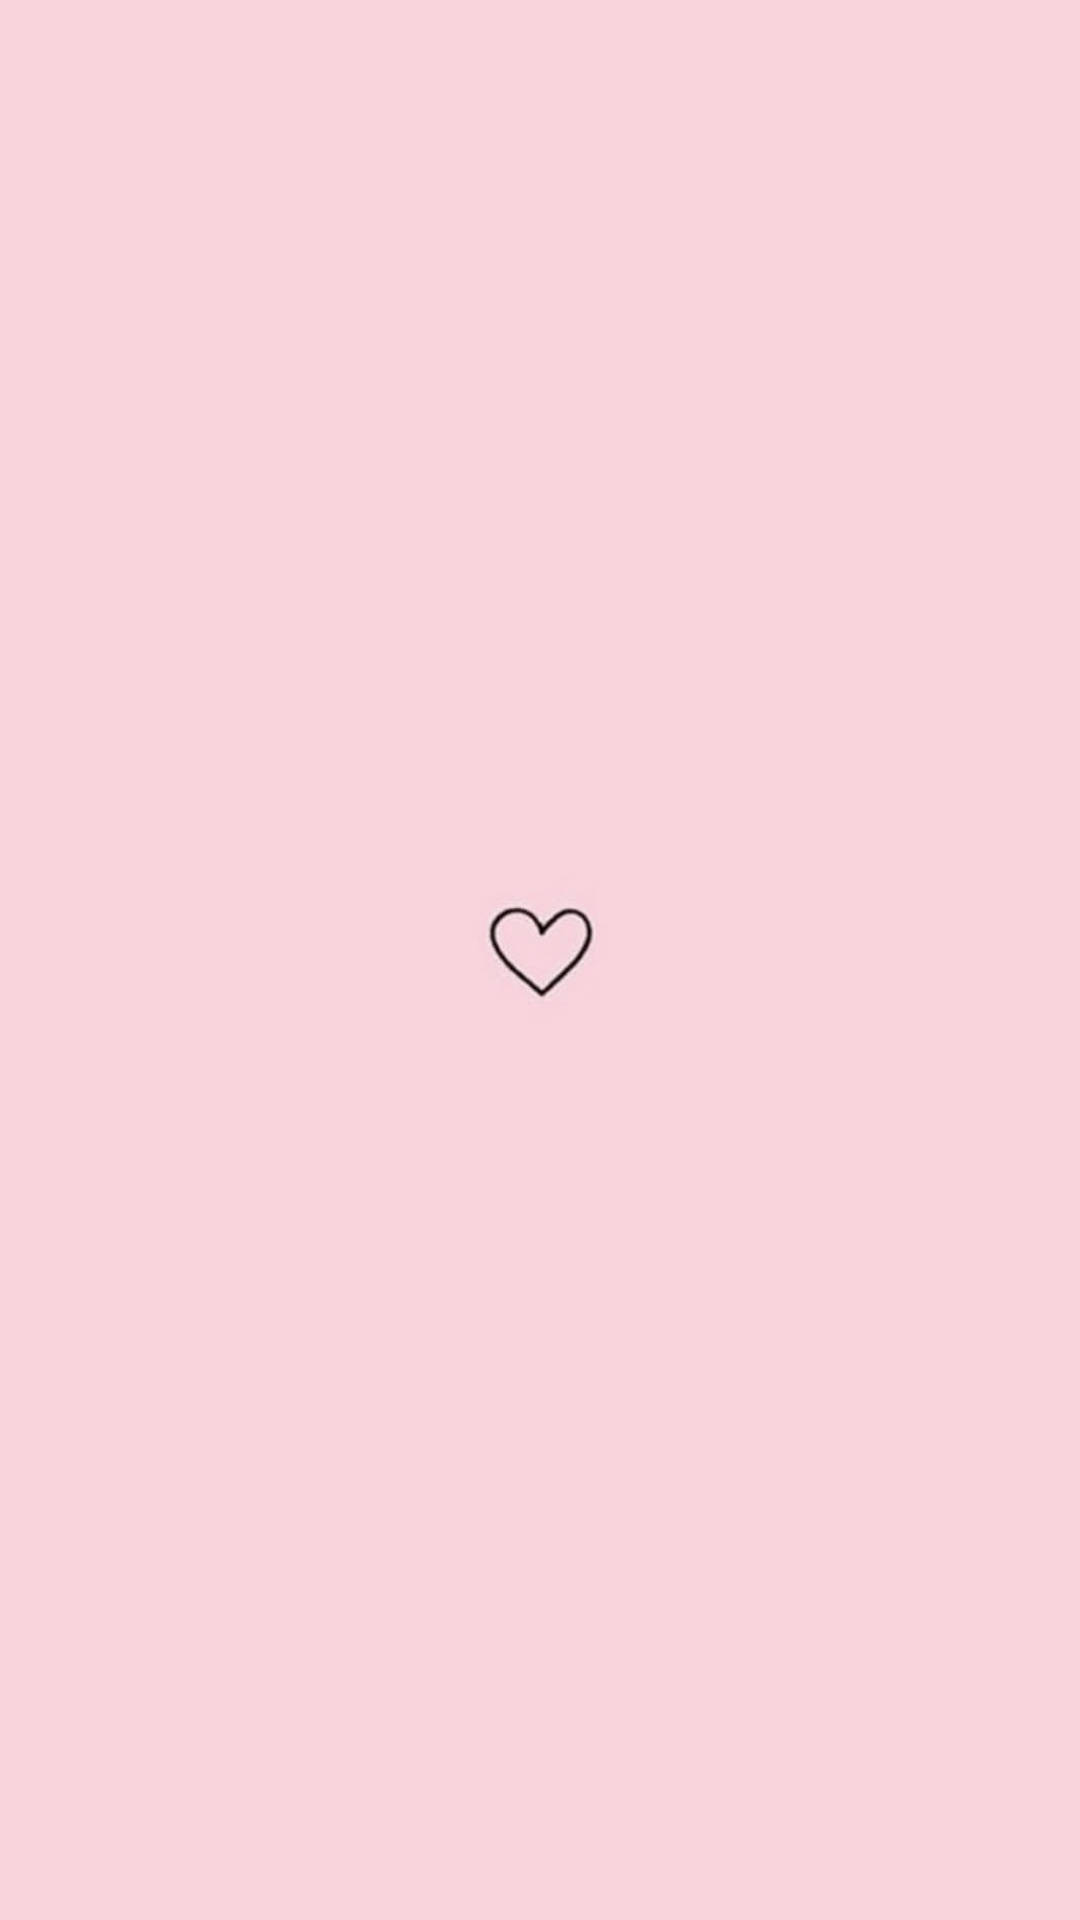 Hình nền hình trái tim màu hồng đơn giản sẽ truyền tải cho bạn thông điệp về sự đơn giản và sự chân thành trong tình yêu. Với bức hình giản đơn này, bạn cảm nhận được sự ấm áp, sự yên bình, đong đầy cảm xúc trong tim mình.